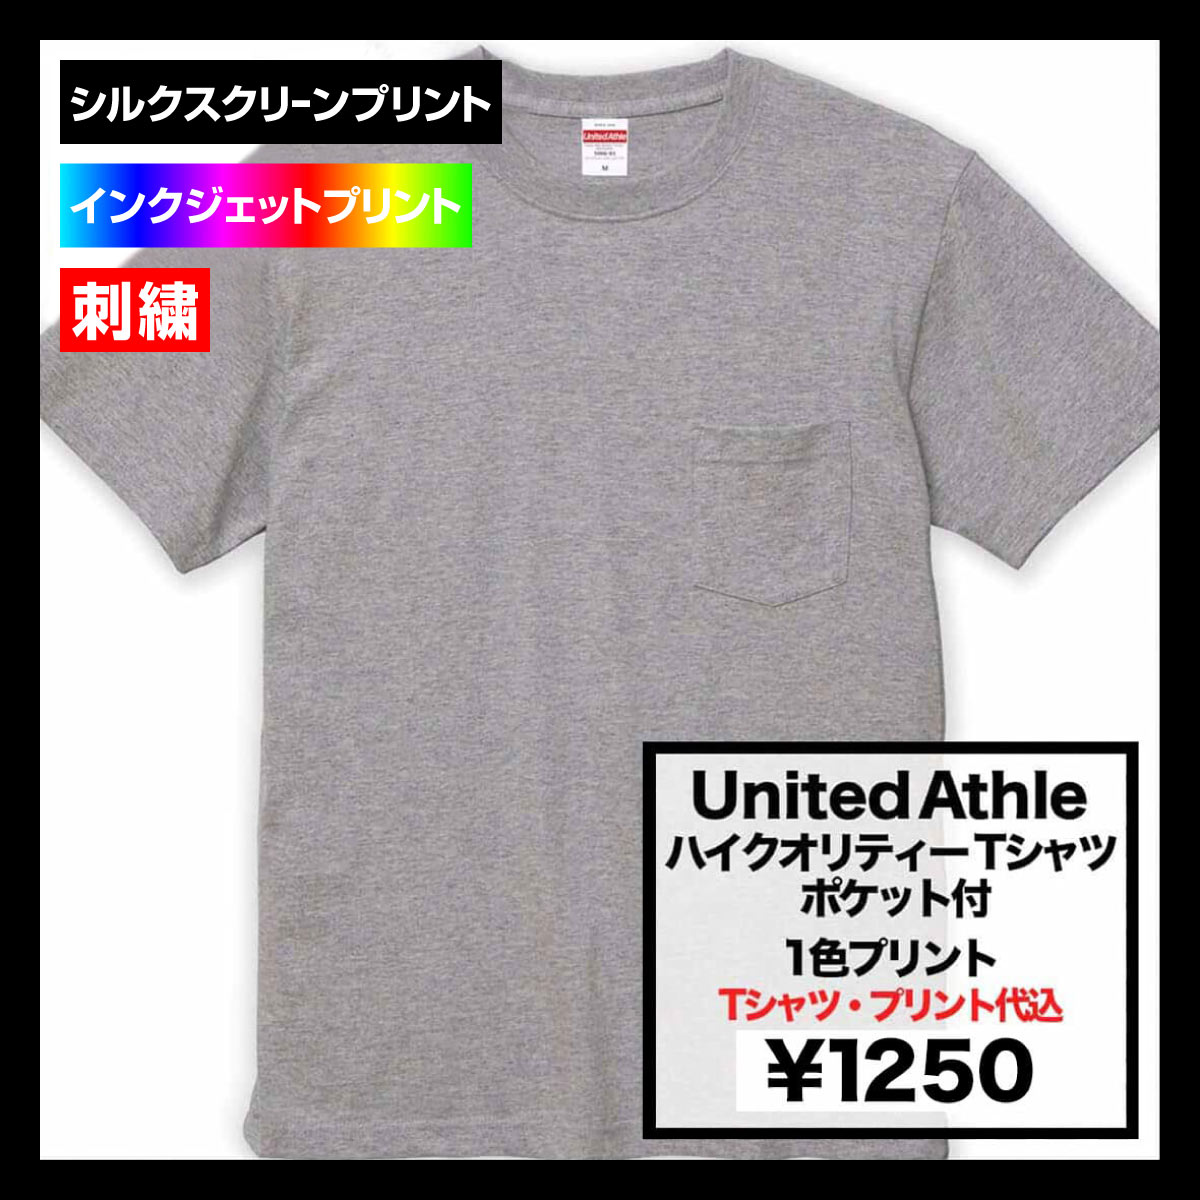 United Athle ユナイテッドアスレ 5.6 oz ハイクオリティー Tシャツ (ポケット付) (品番5006-01)